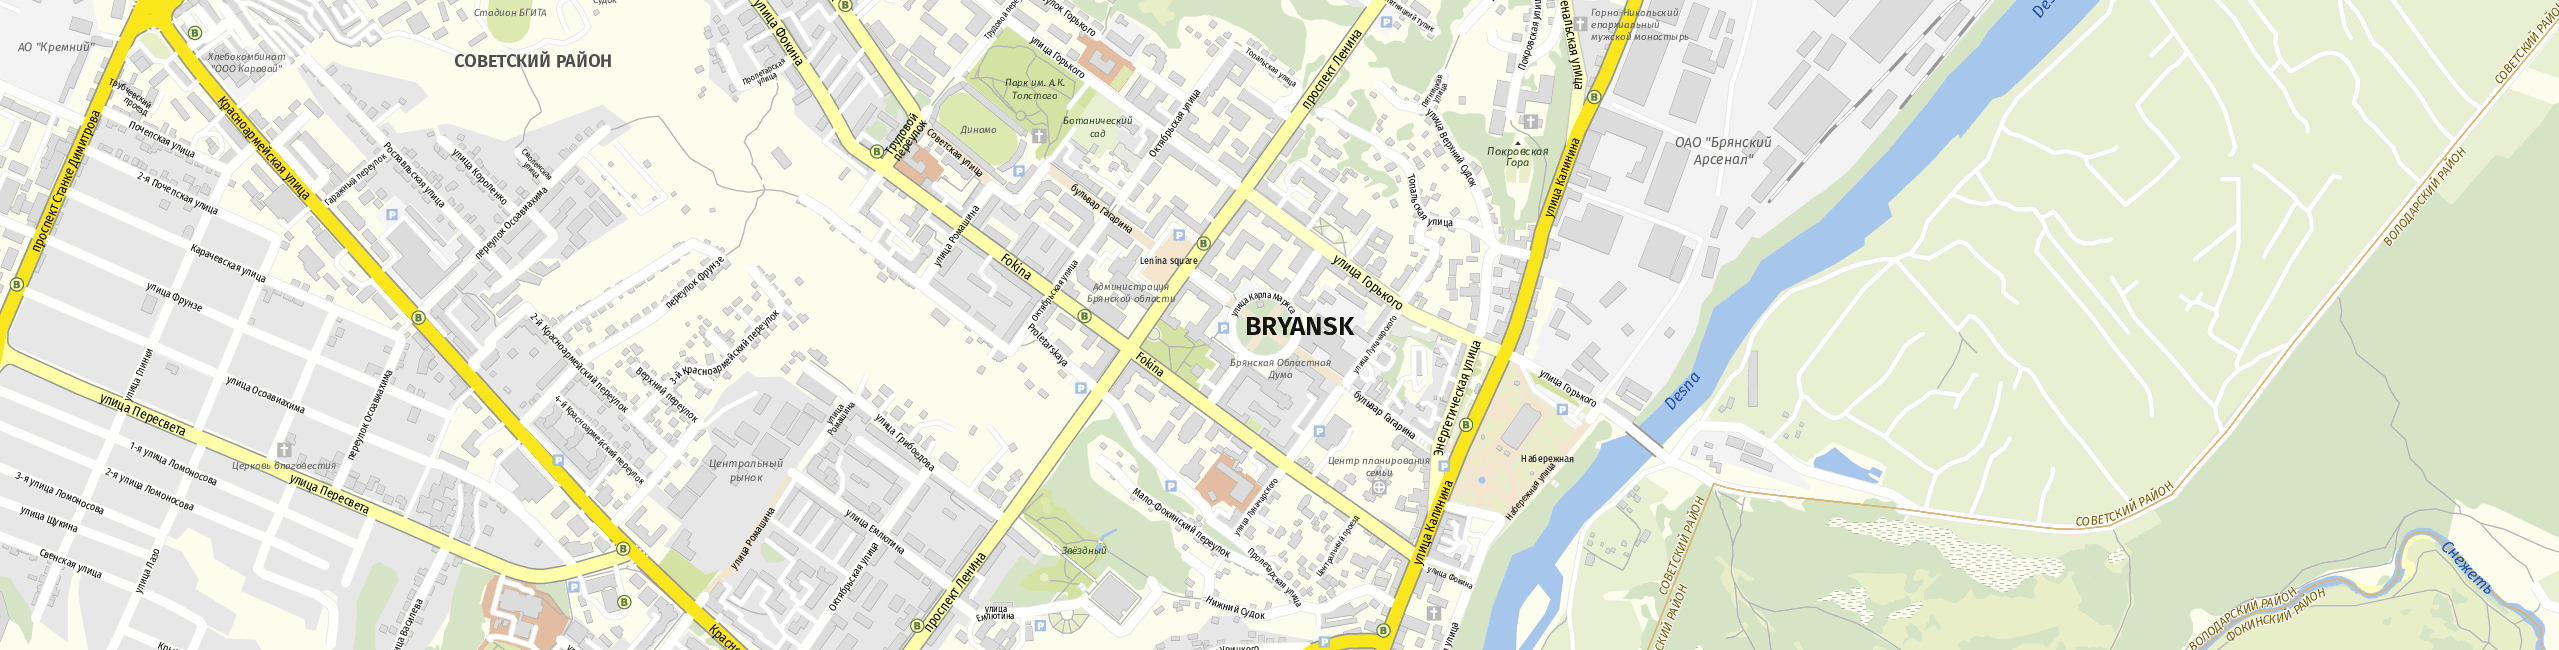 Stadtplan Bryansk zum Downloaden.